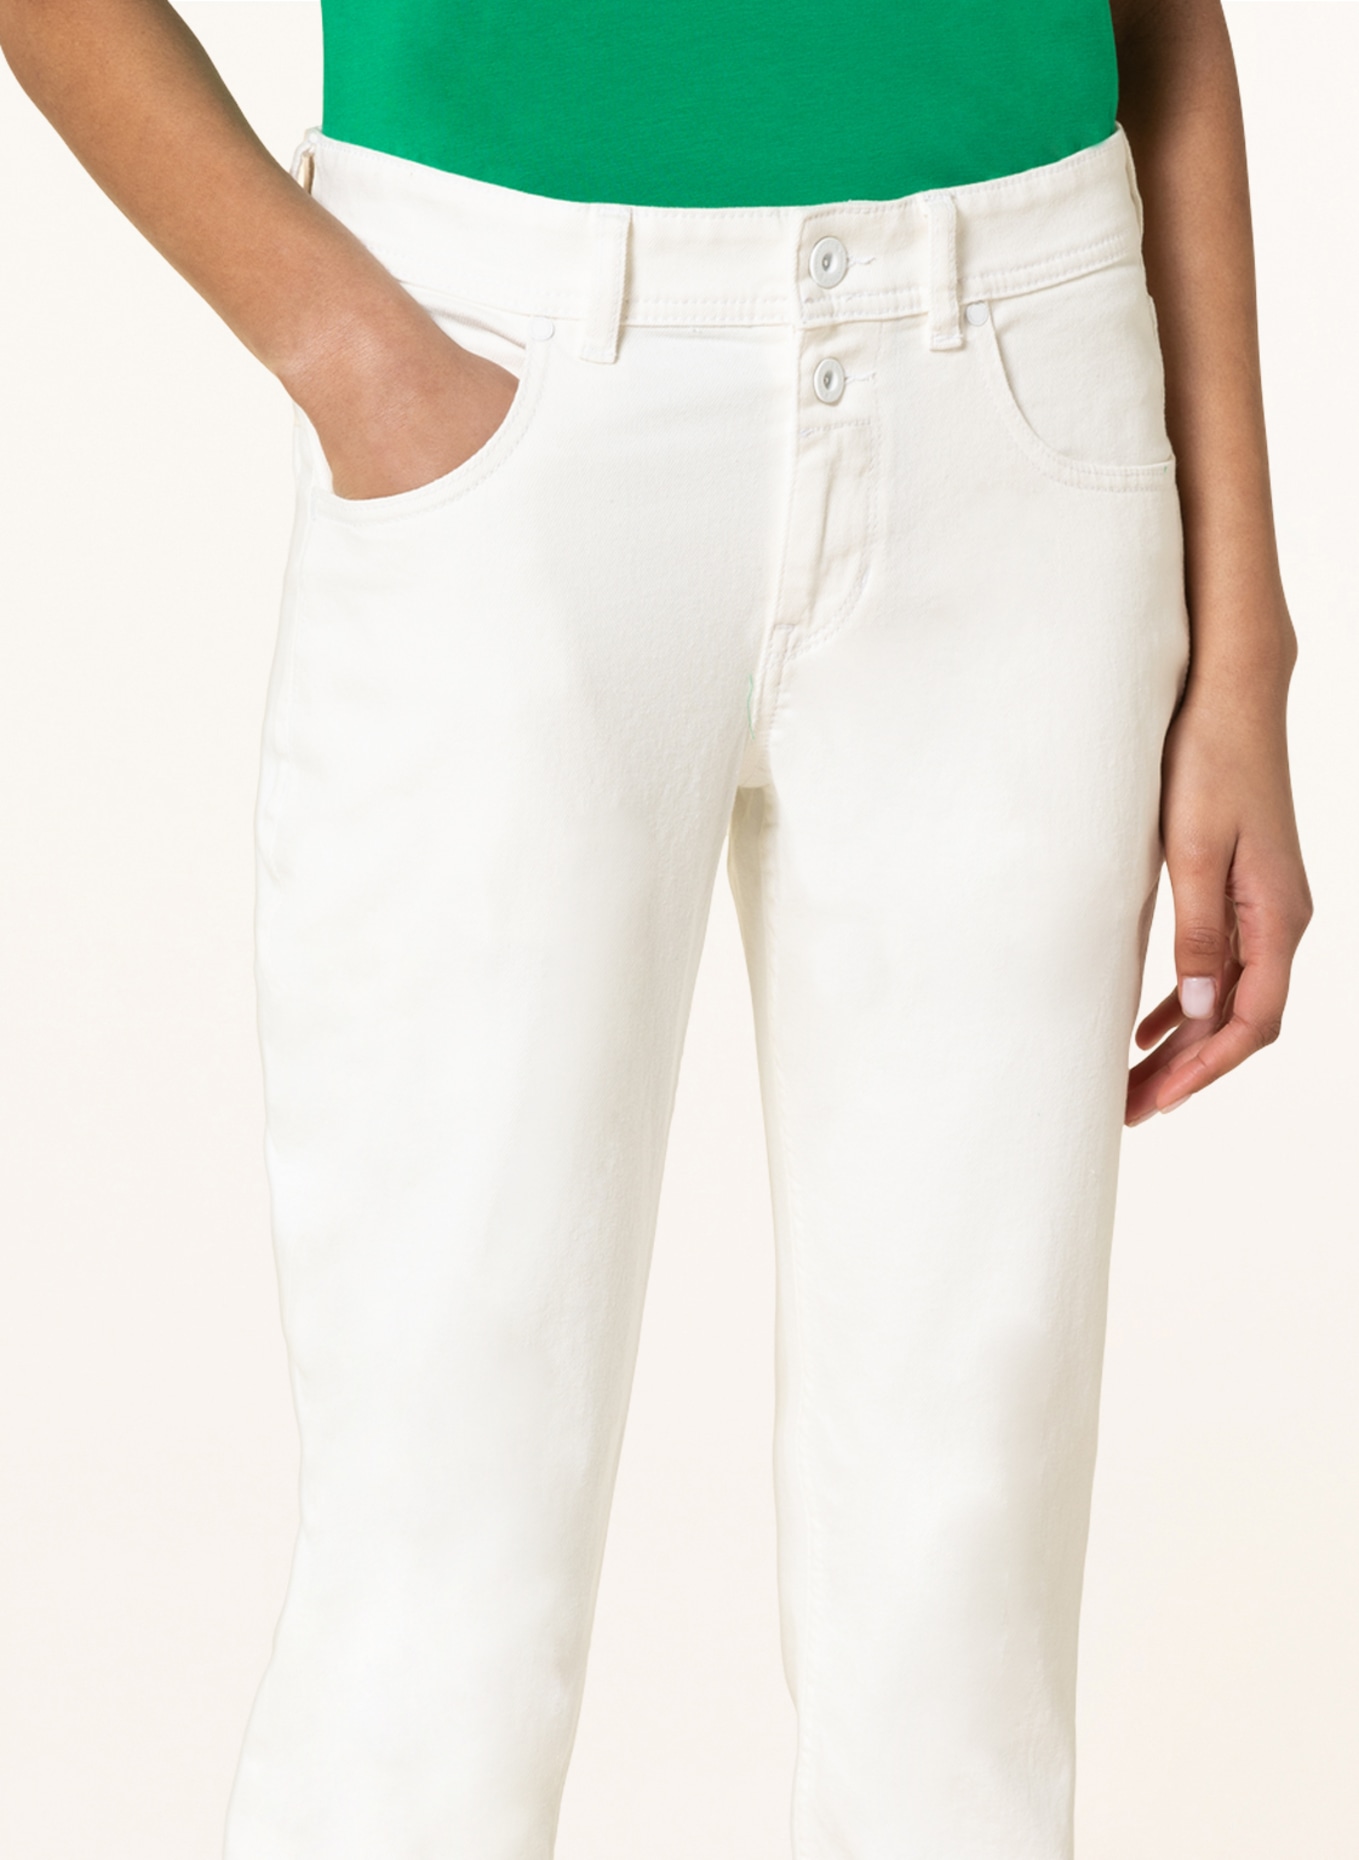 Marc O'Polo Boyfriend Jeans, Farbe: 006 Clean white garment dye wash (Bild 5)